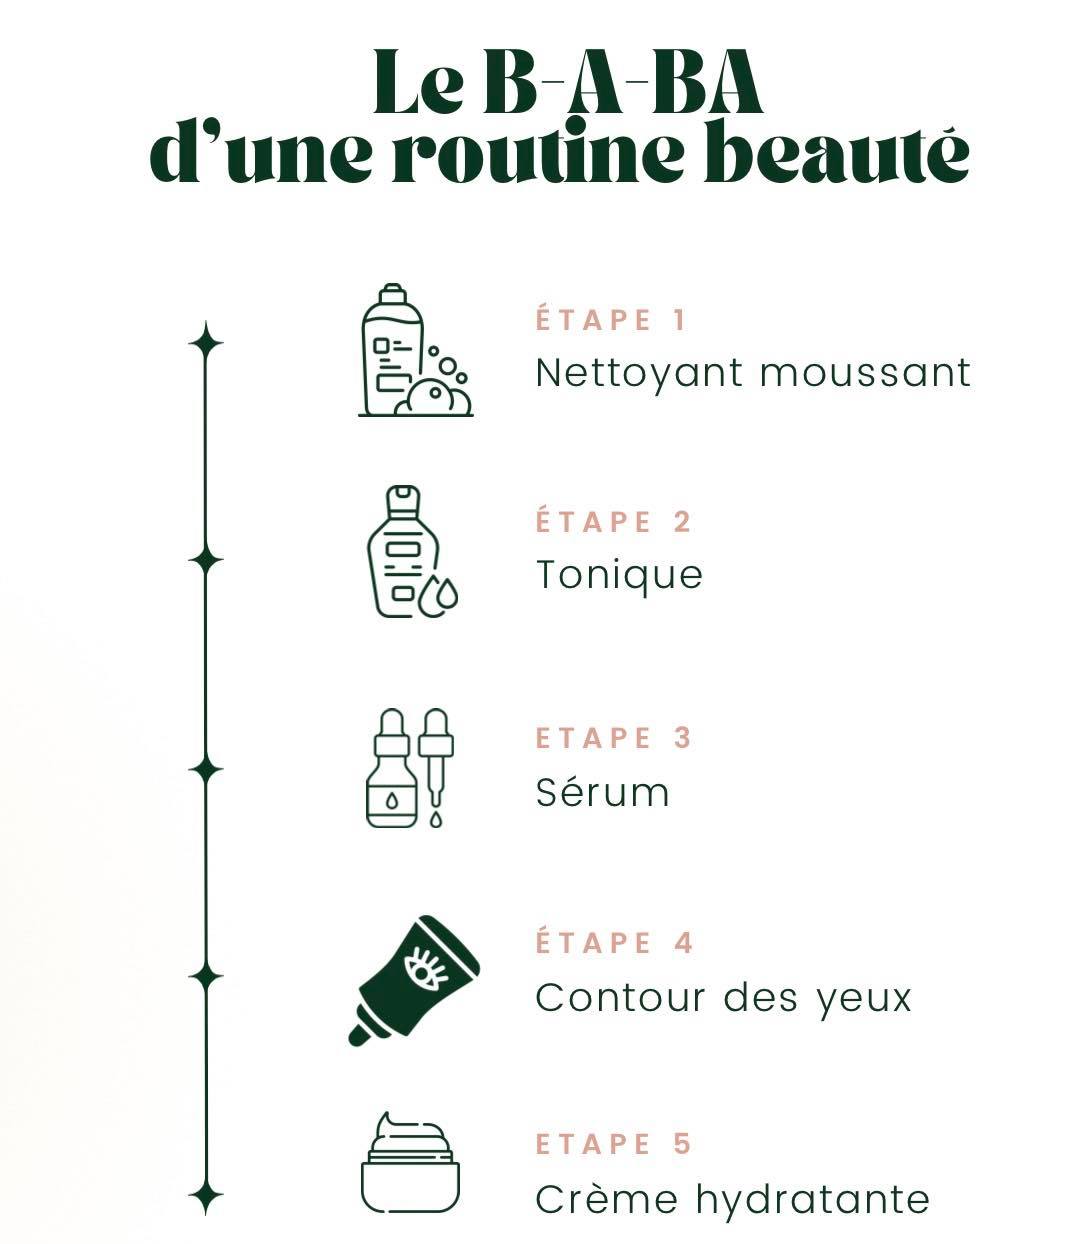 les_etapes_de_la_routine_beaute_javotine.jpg